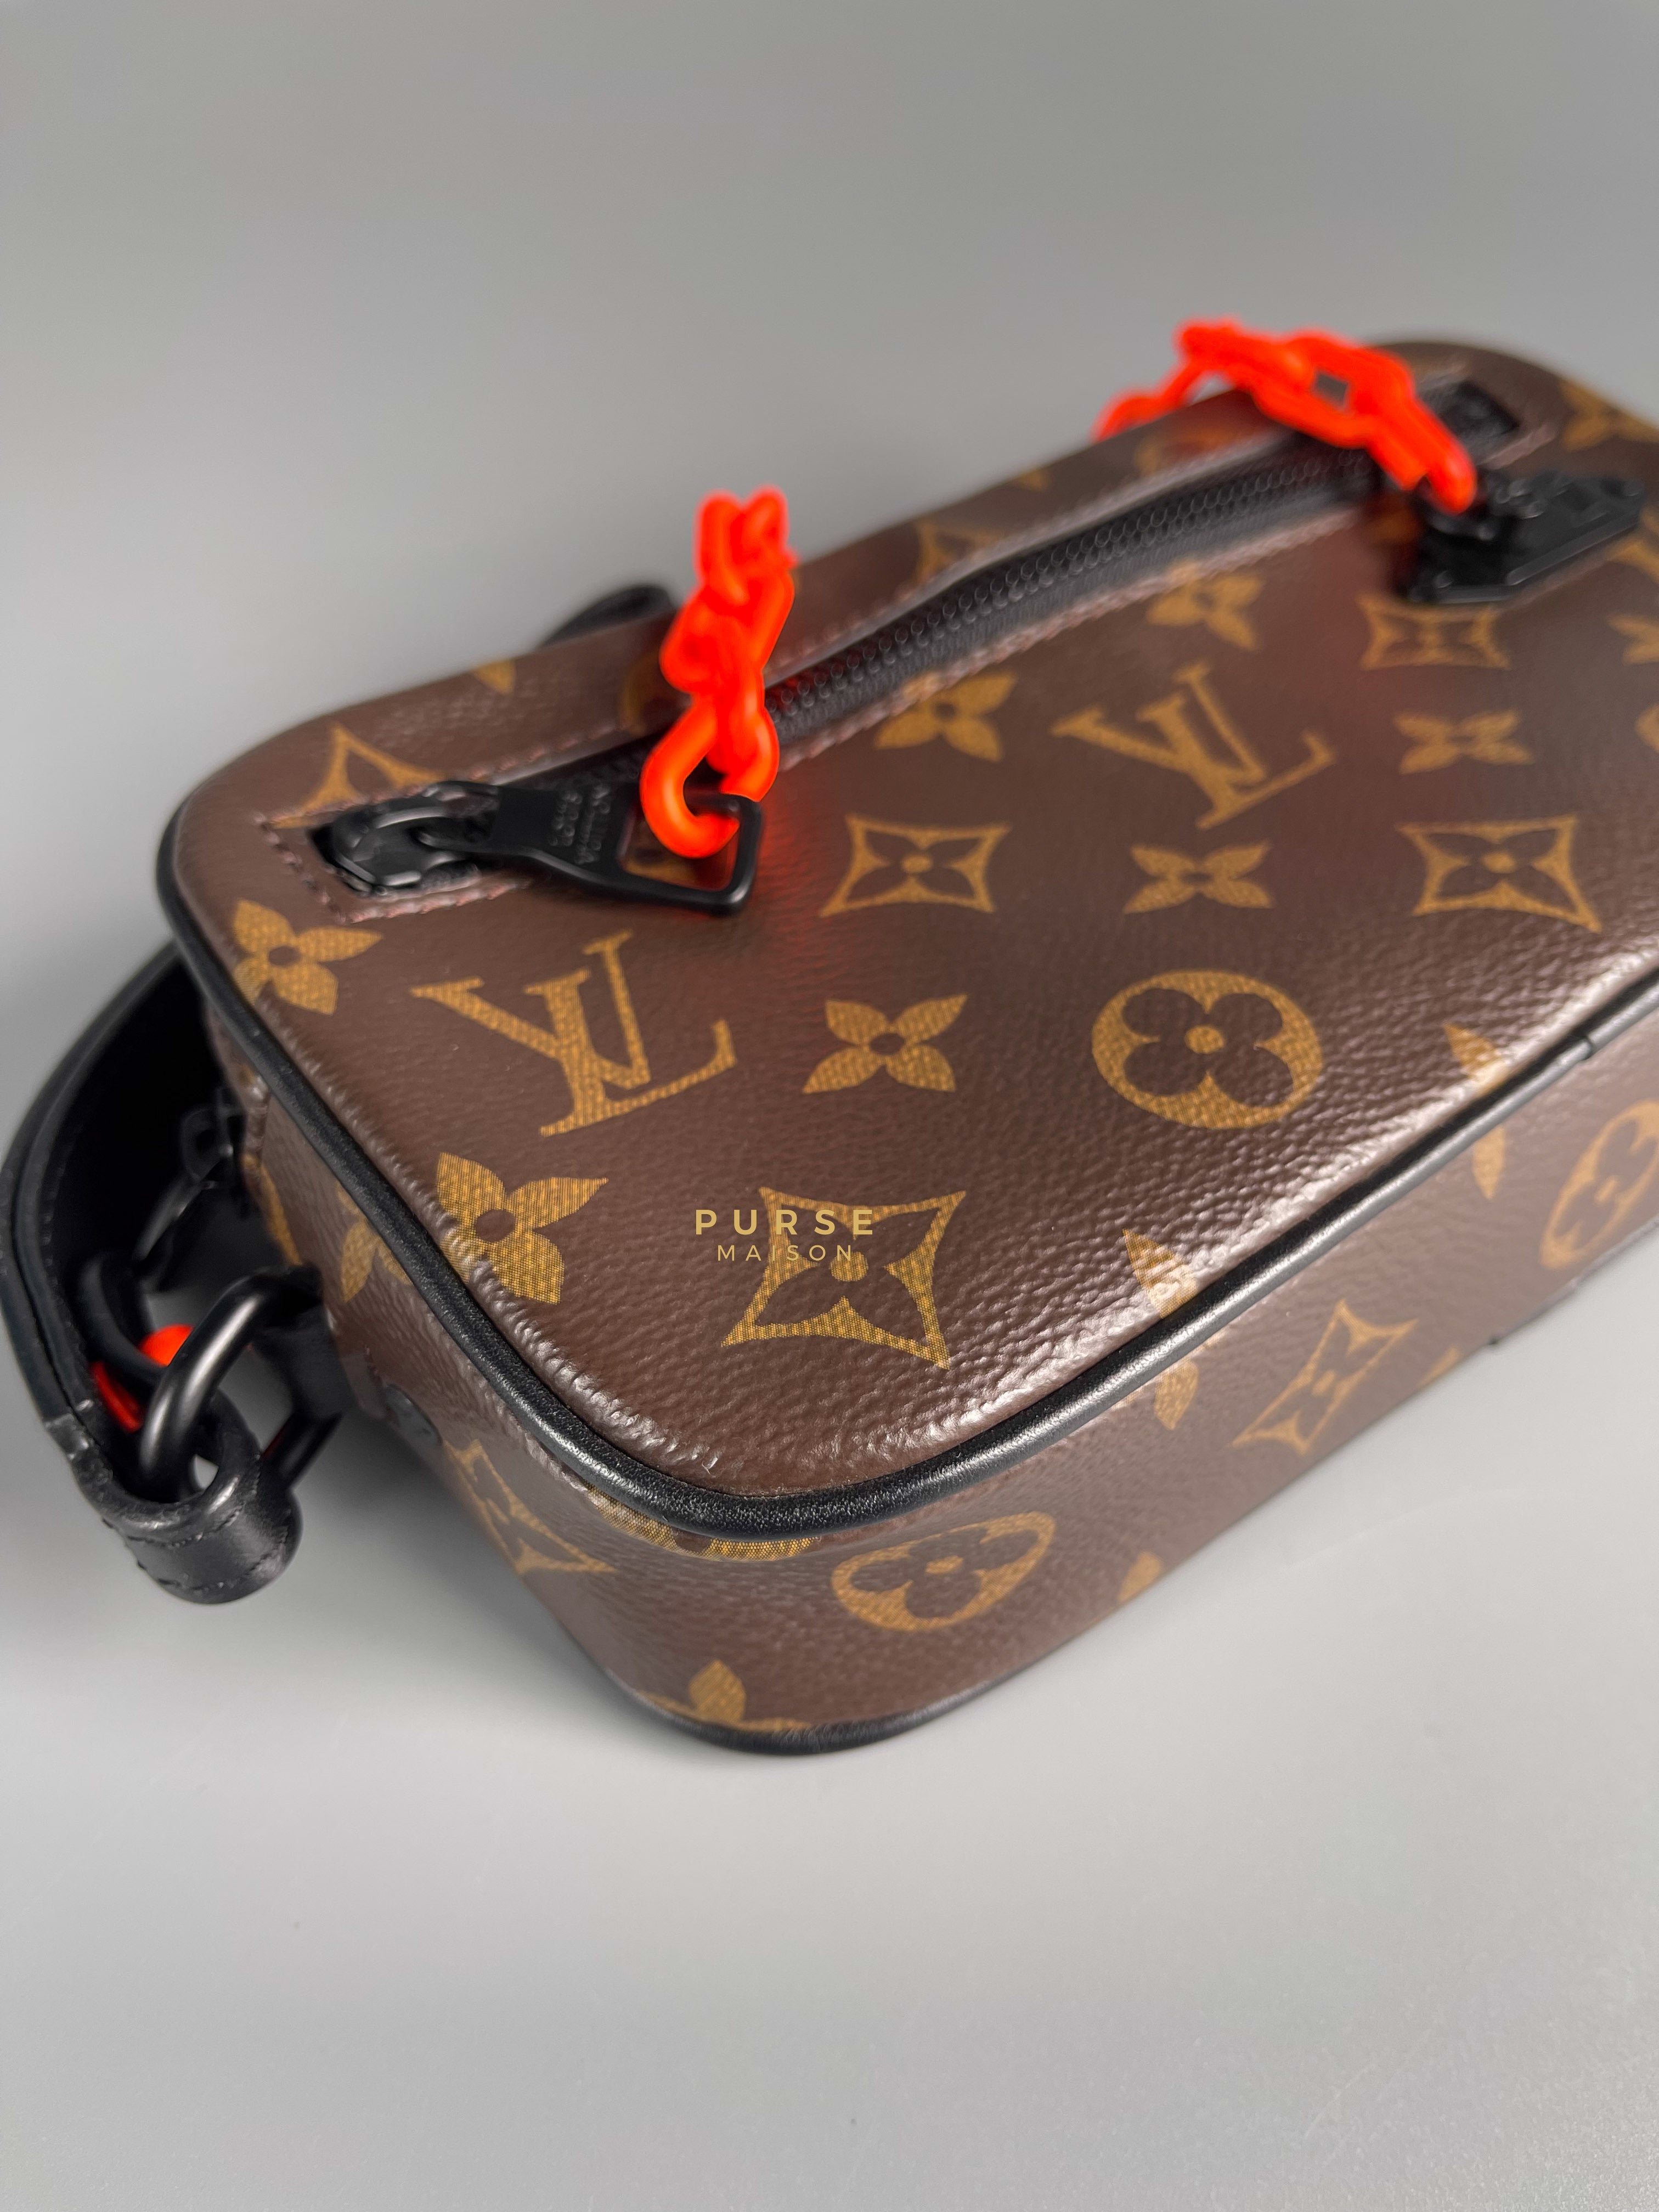 Louis Vuitton Pochette Volga Clutch Bag in Monogram Canvas (Date code: SP4129) | Purse Maison Luxury Bags Shop